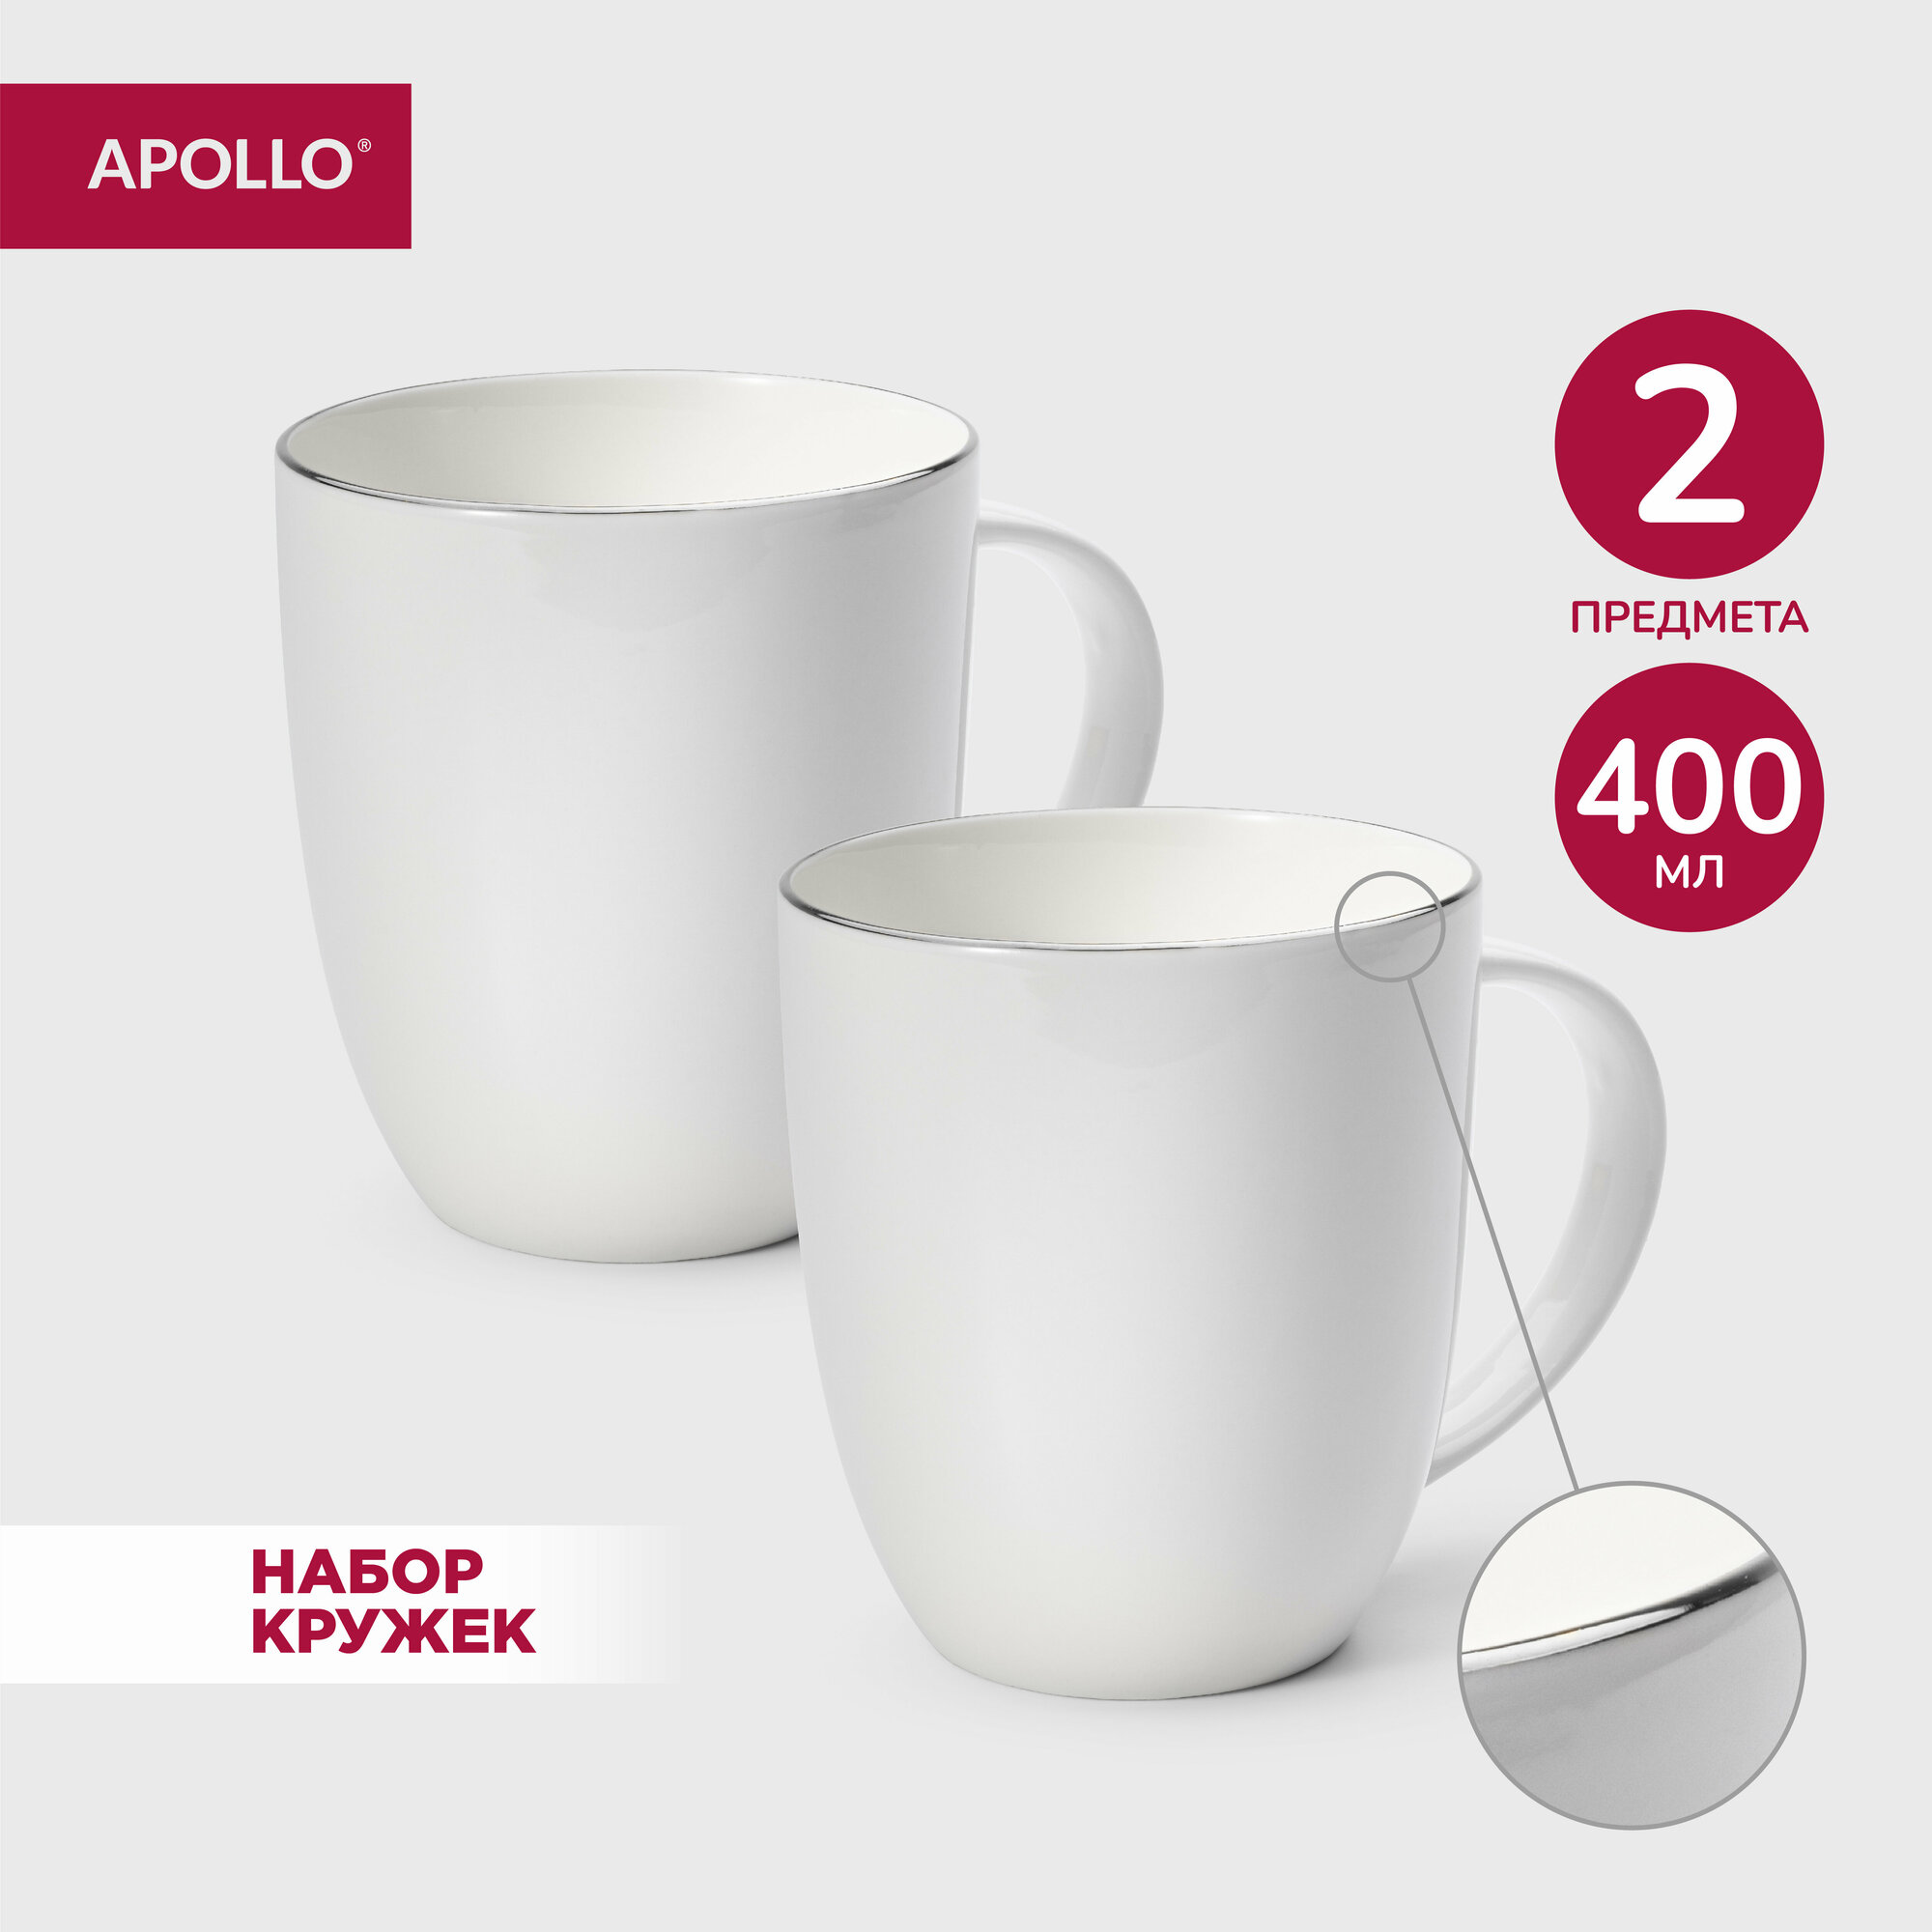 Кружки фарфоровые набор чашек для чая и кофе APOLLO 